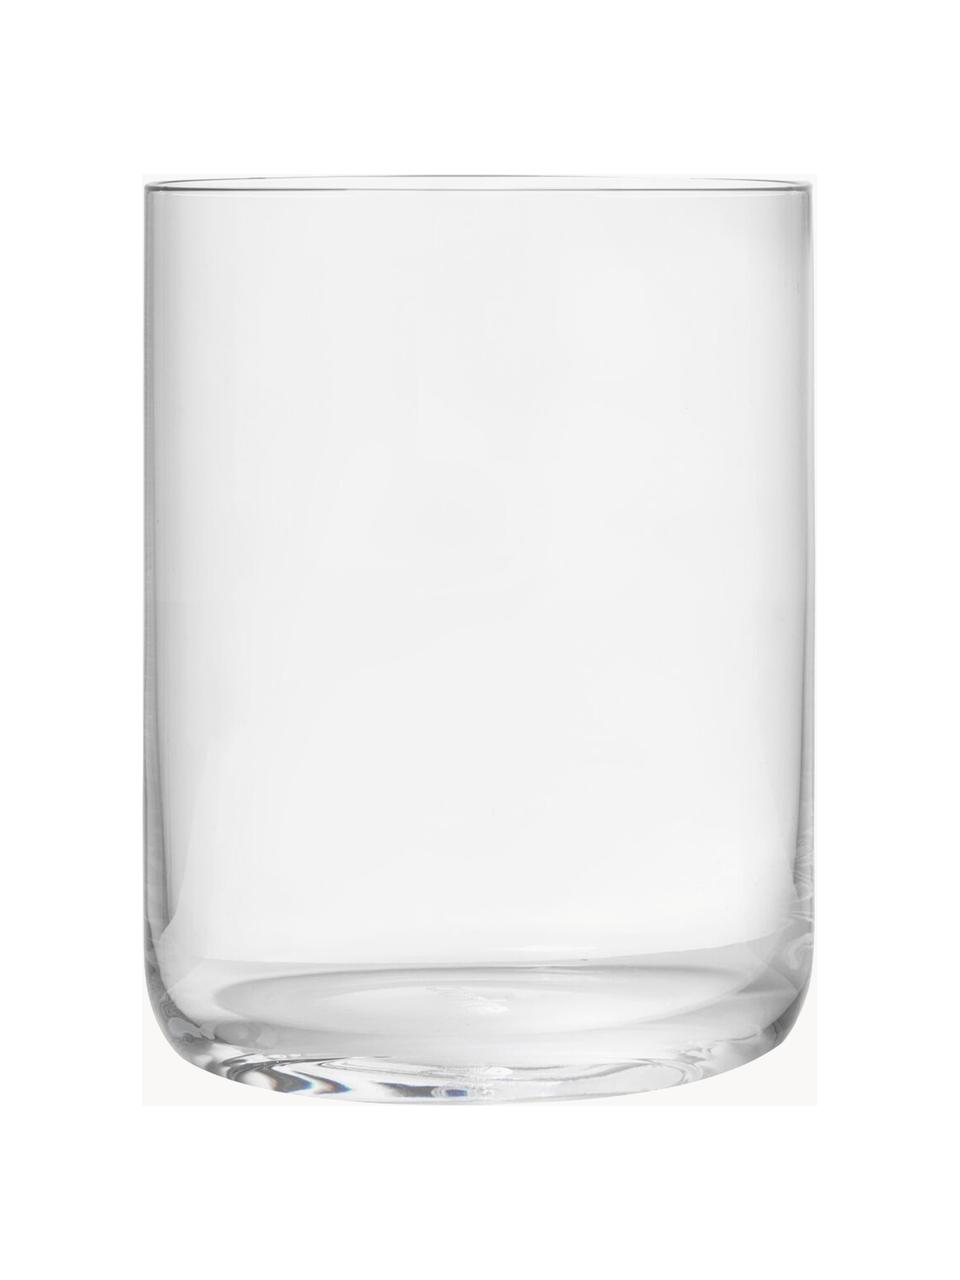 Set 4 bicchieri acqua Nesting, Cristallo, Trasparente, Set in varie misure